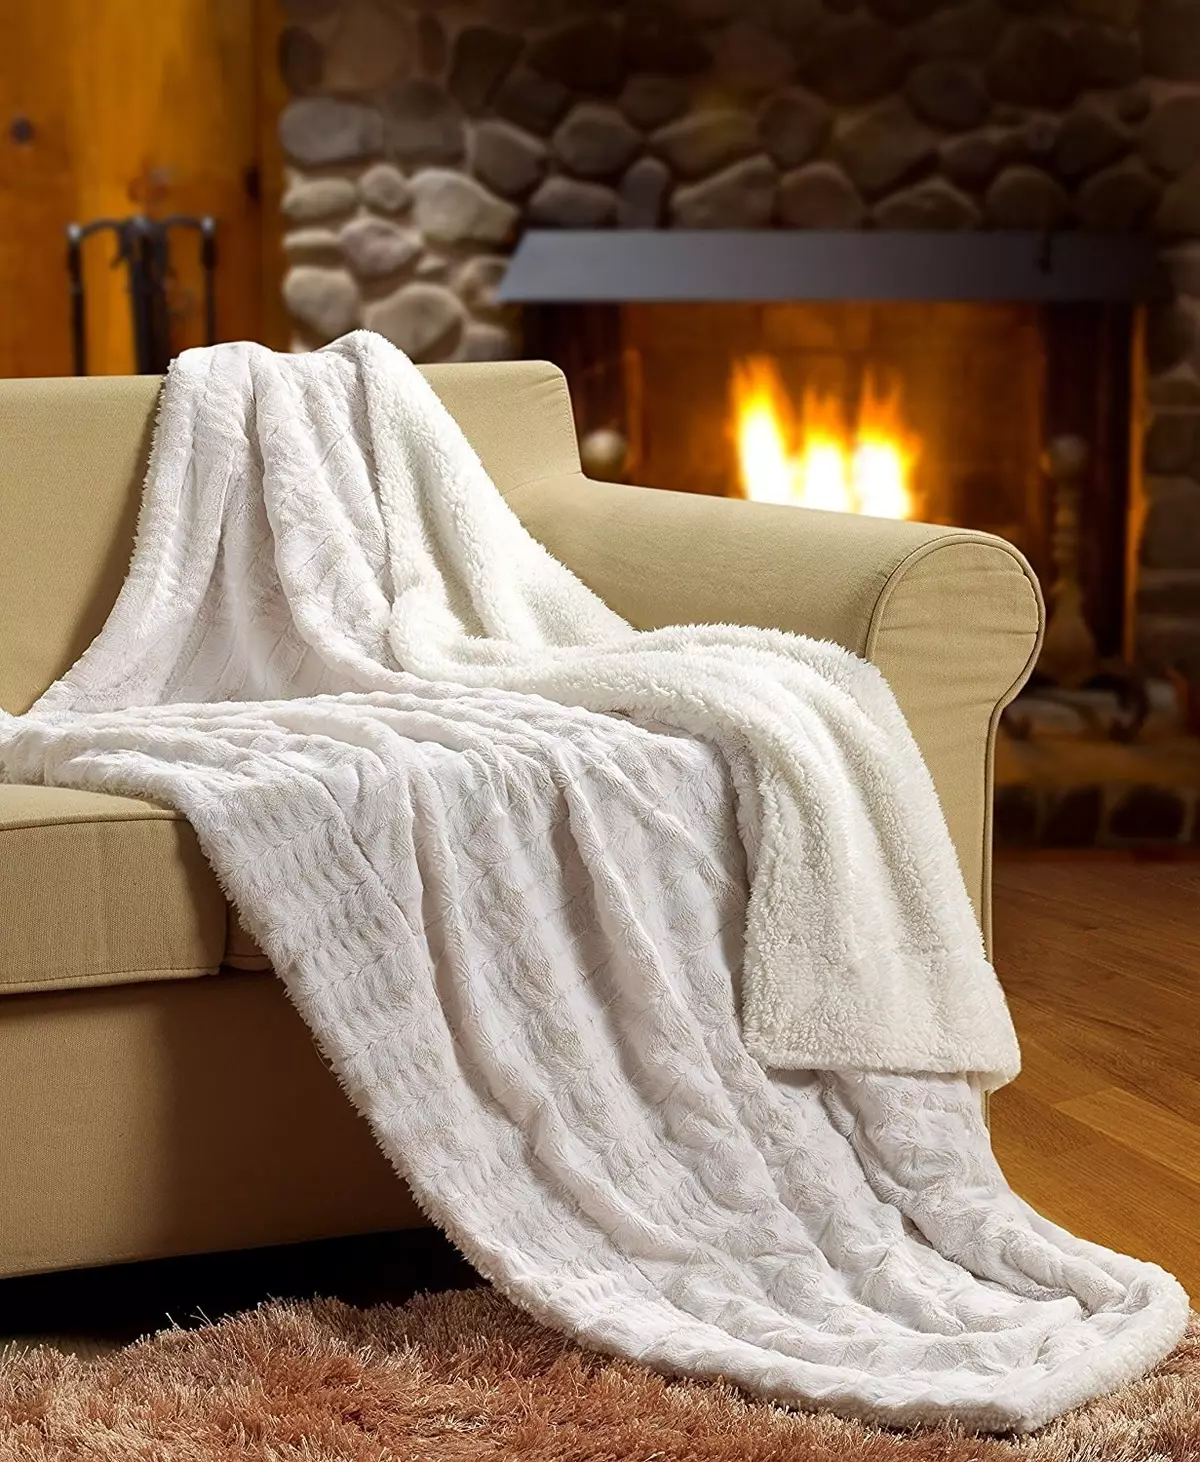 Mantas quentes: como elixir unha colcha acolledora na cama? Mantas quentadas, materiais e deseño, tamaños e consellos de coidado 24937_2